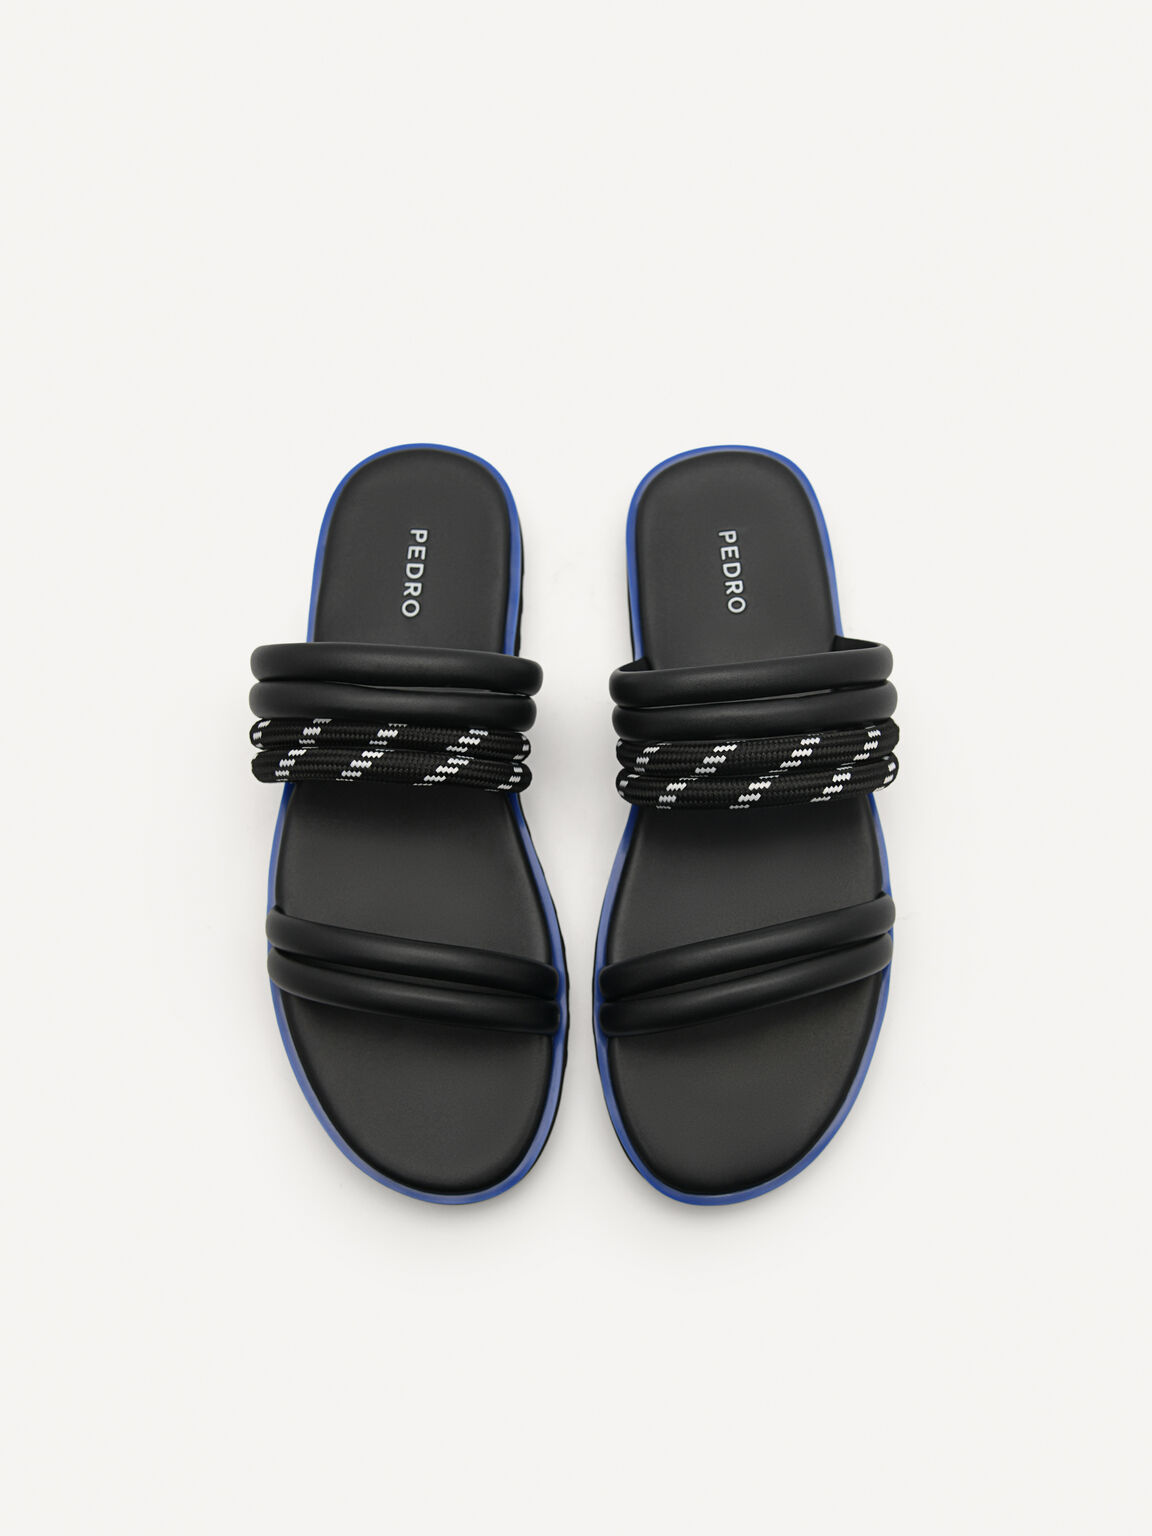 Cord Slide Sandals, Black